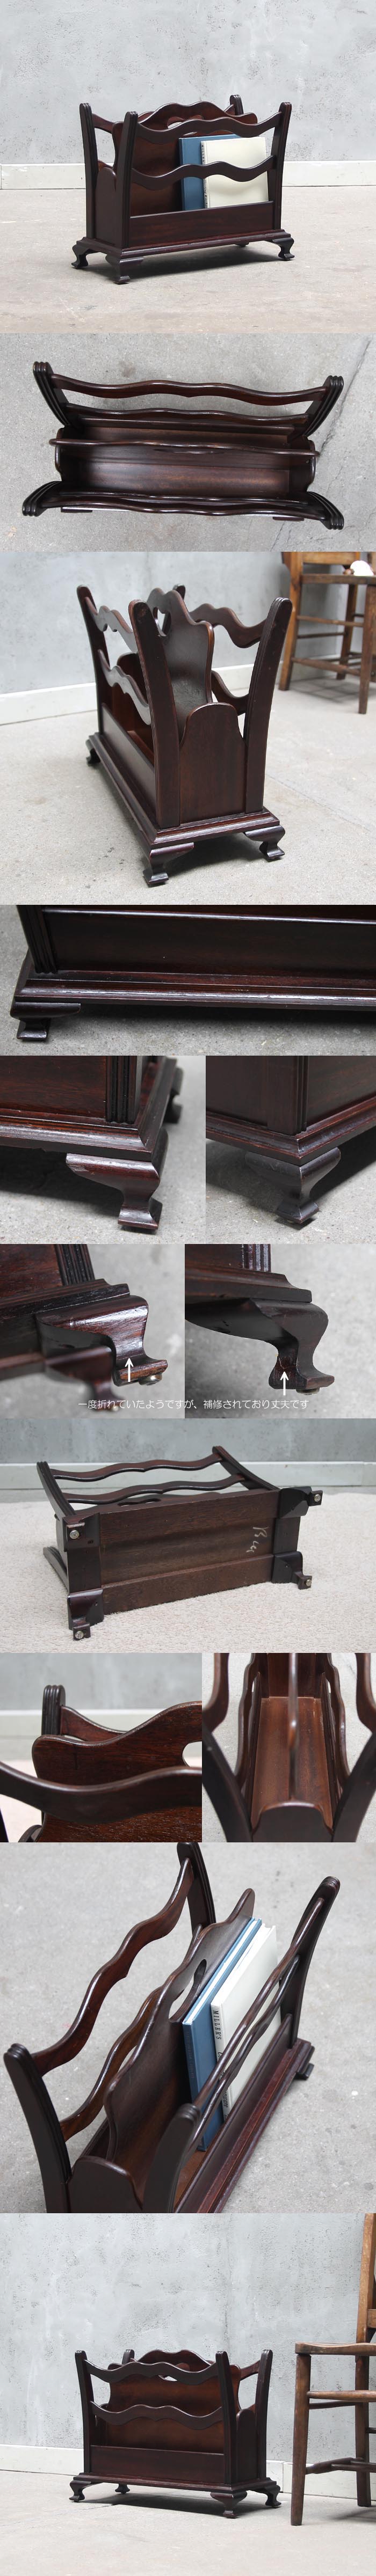 アンティーク調 木製マガジンラック/イギリス/家具【おしゃれ収納に】N-111